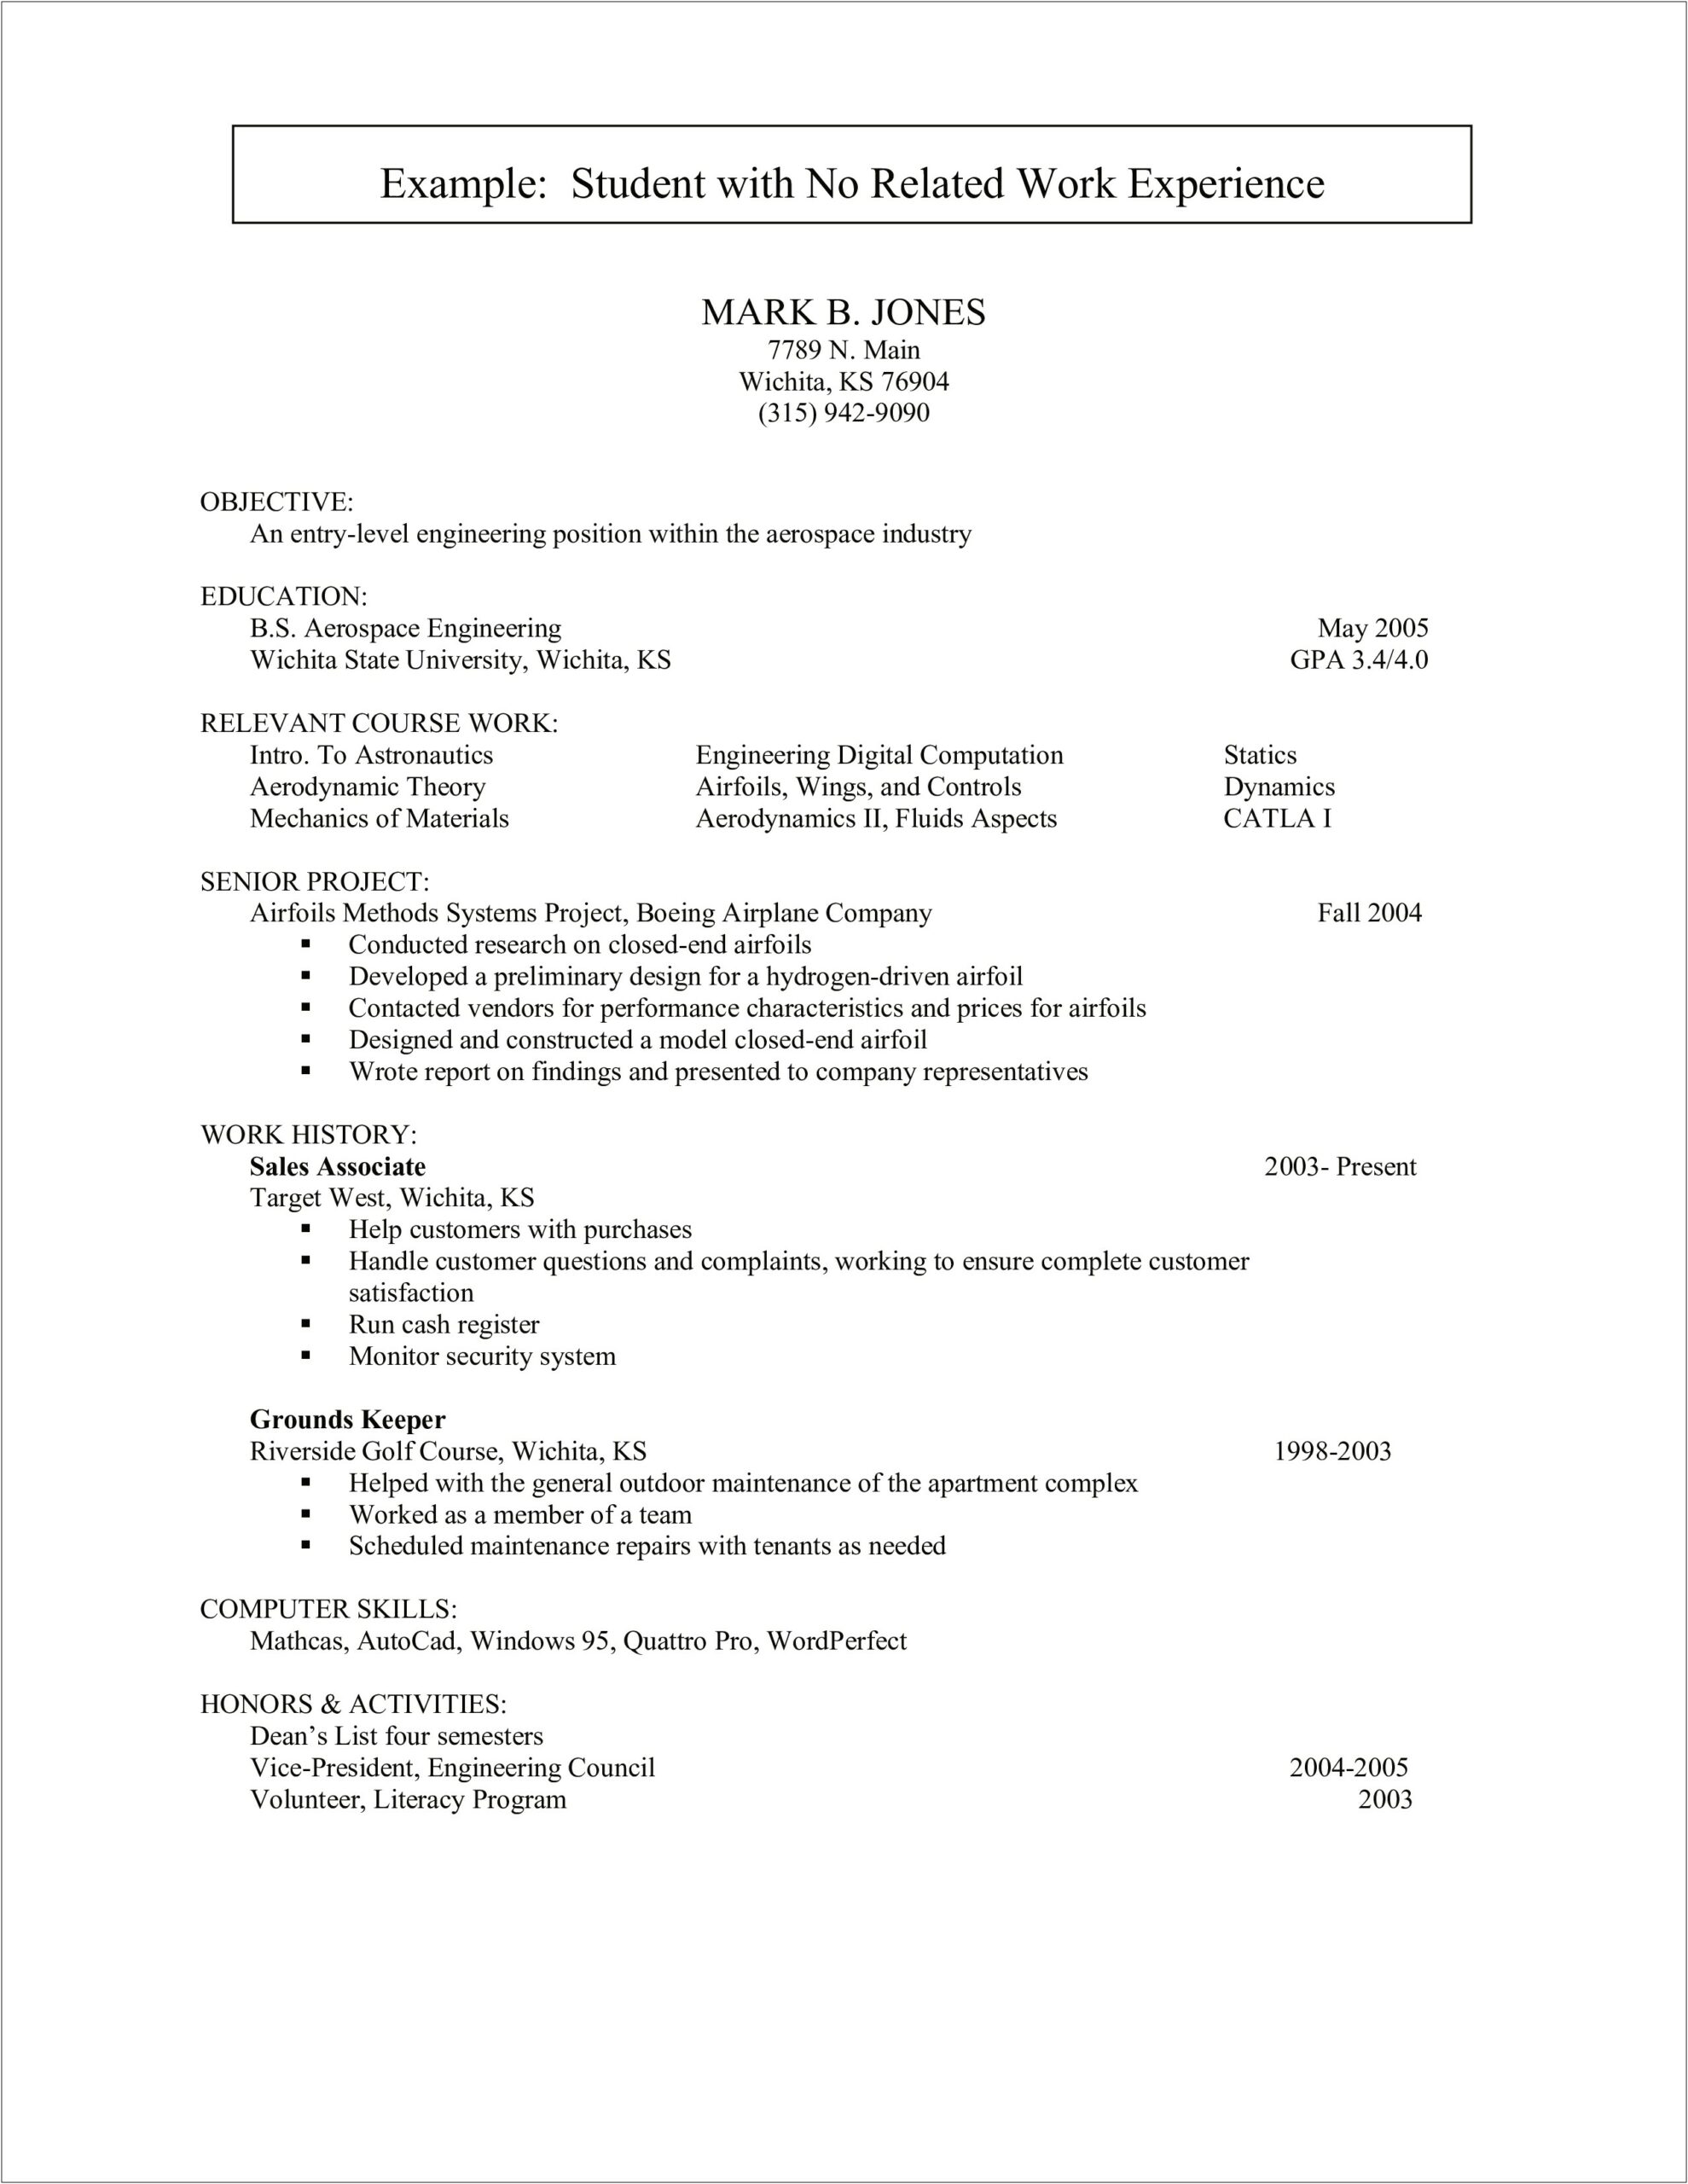 Sample Resume List Computer Skills